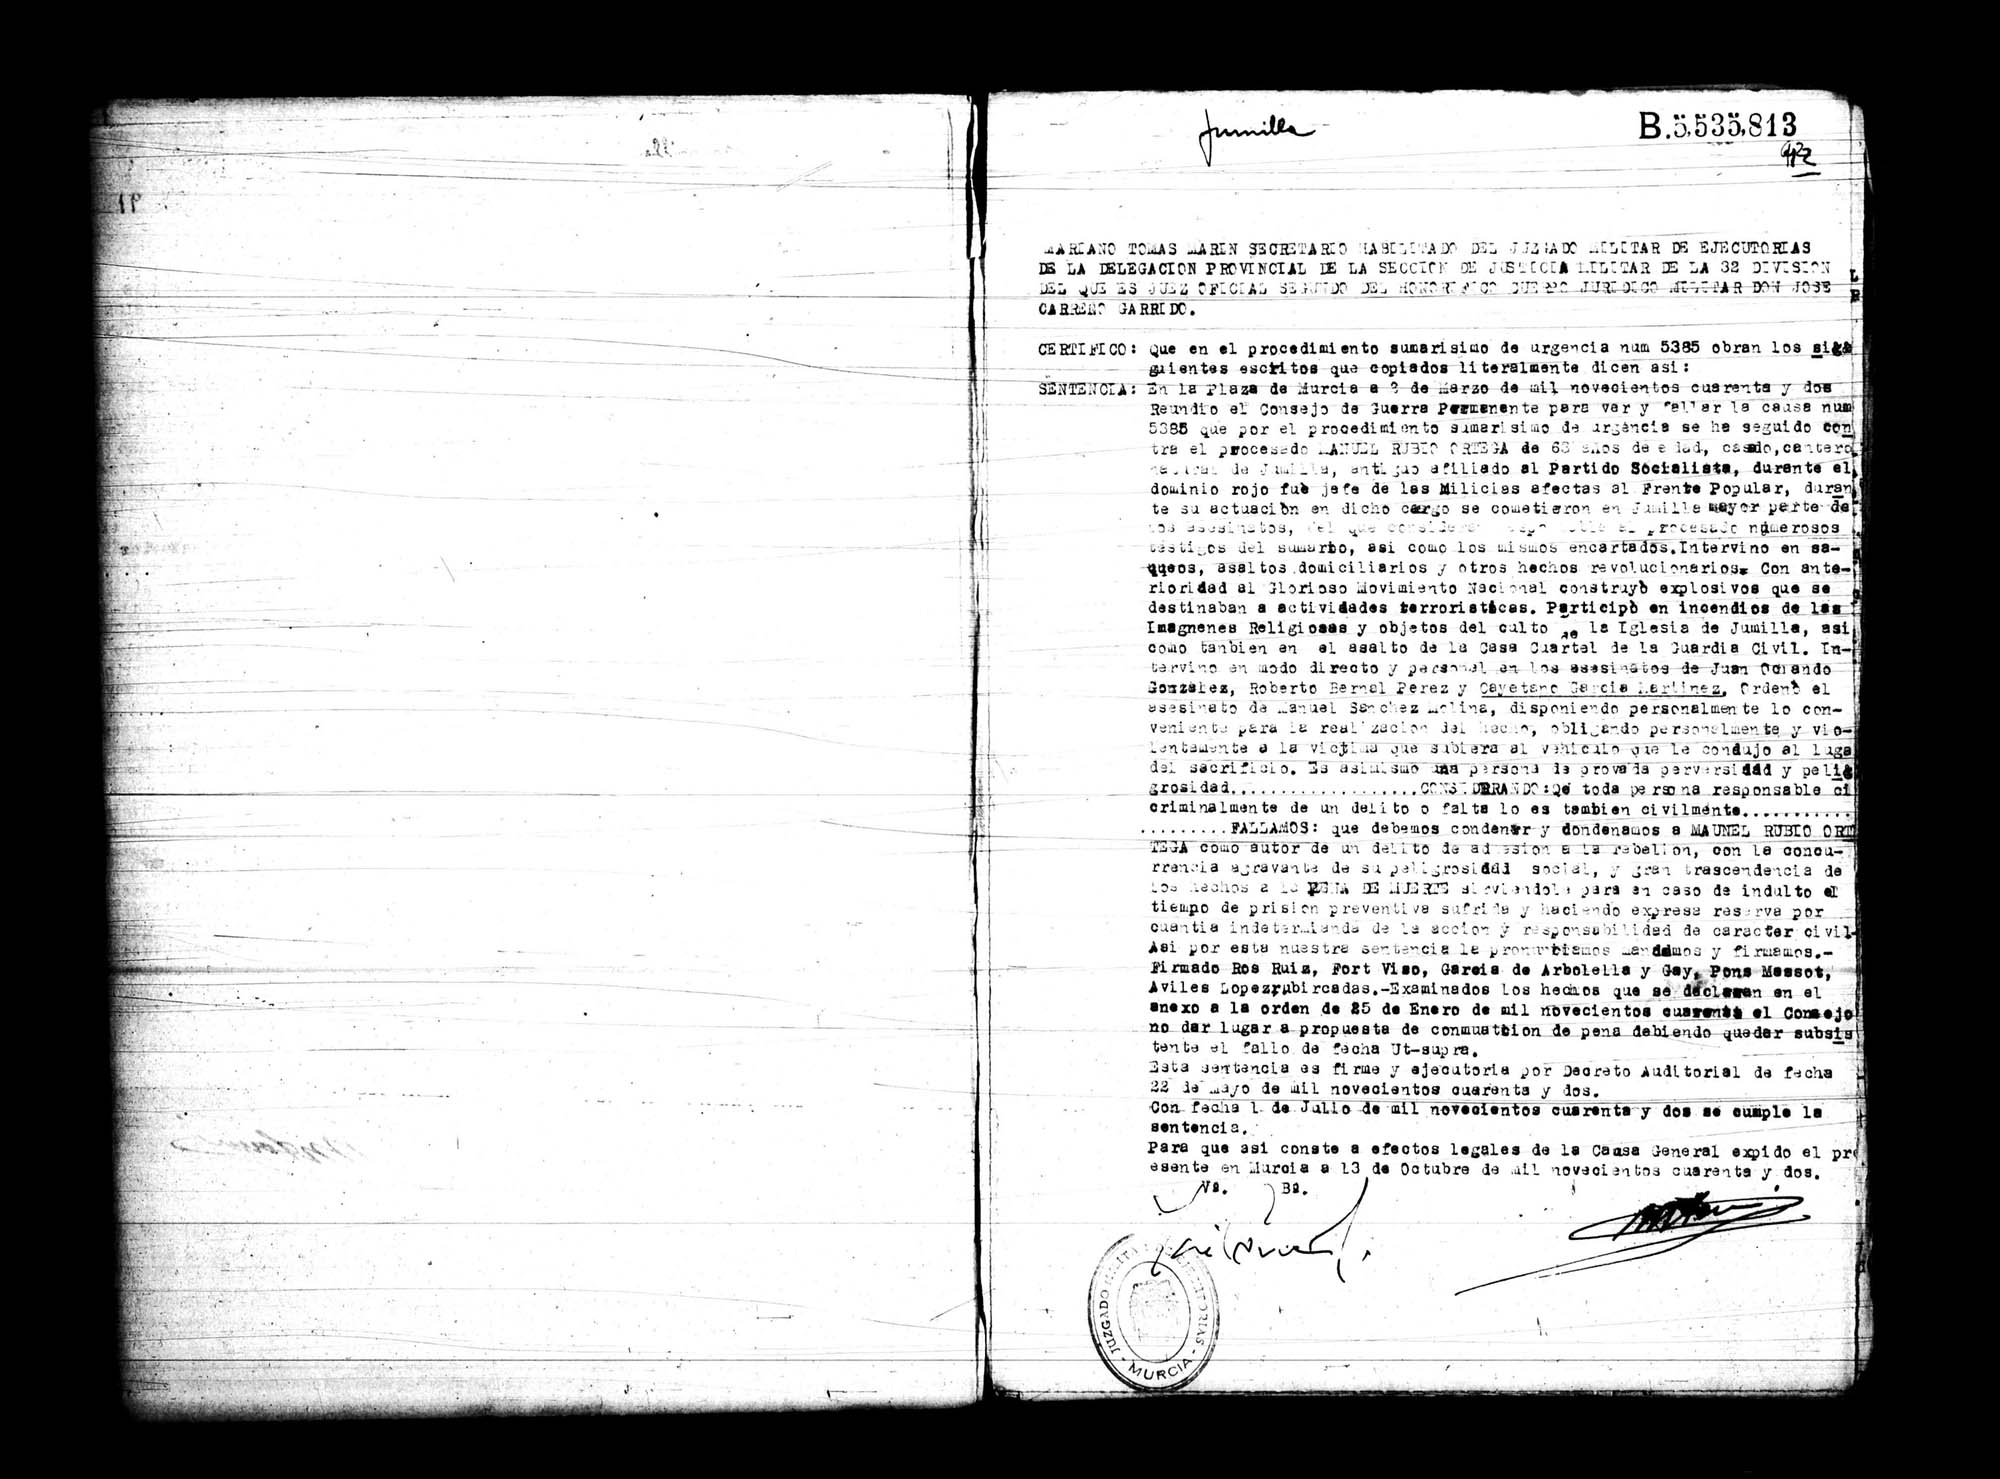 Certificado de la sentencia pronunciada contra Manuel Rubio Ortega, causa 5385, el 2 de marzo de 1942 en Murcia.